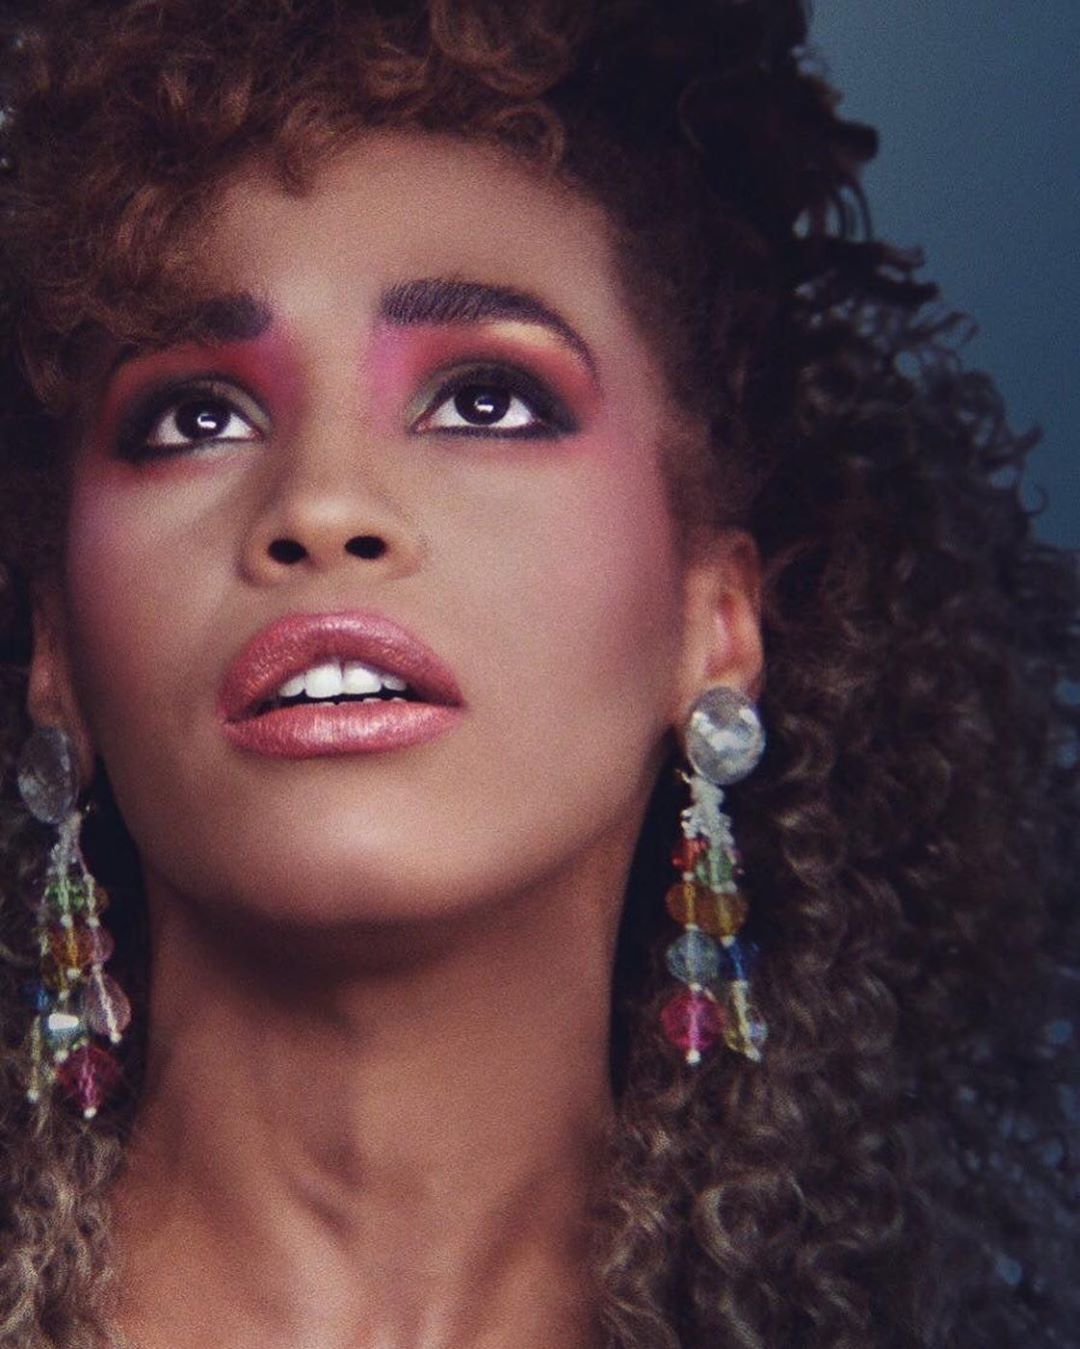 Nigdy niepublikowany utwór Whitney Houston ujrzał światło dzienne!